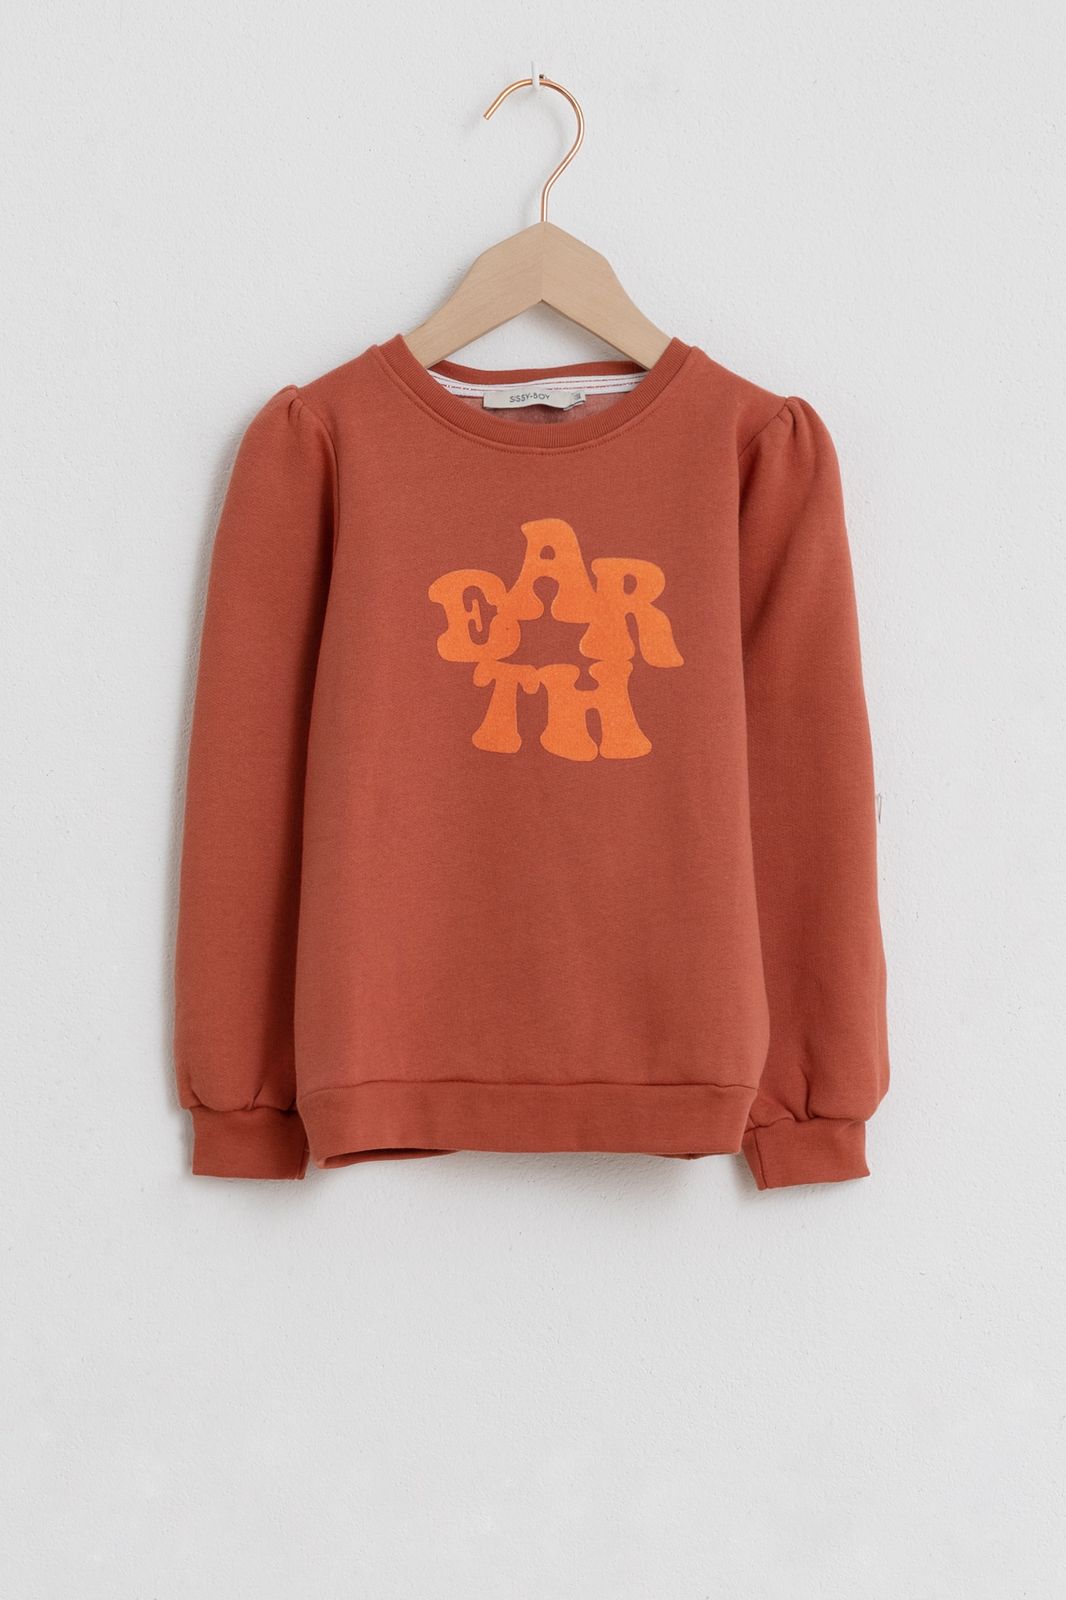 Orangefarbener Sweater mit Textaufdruck